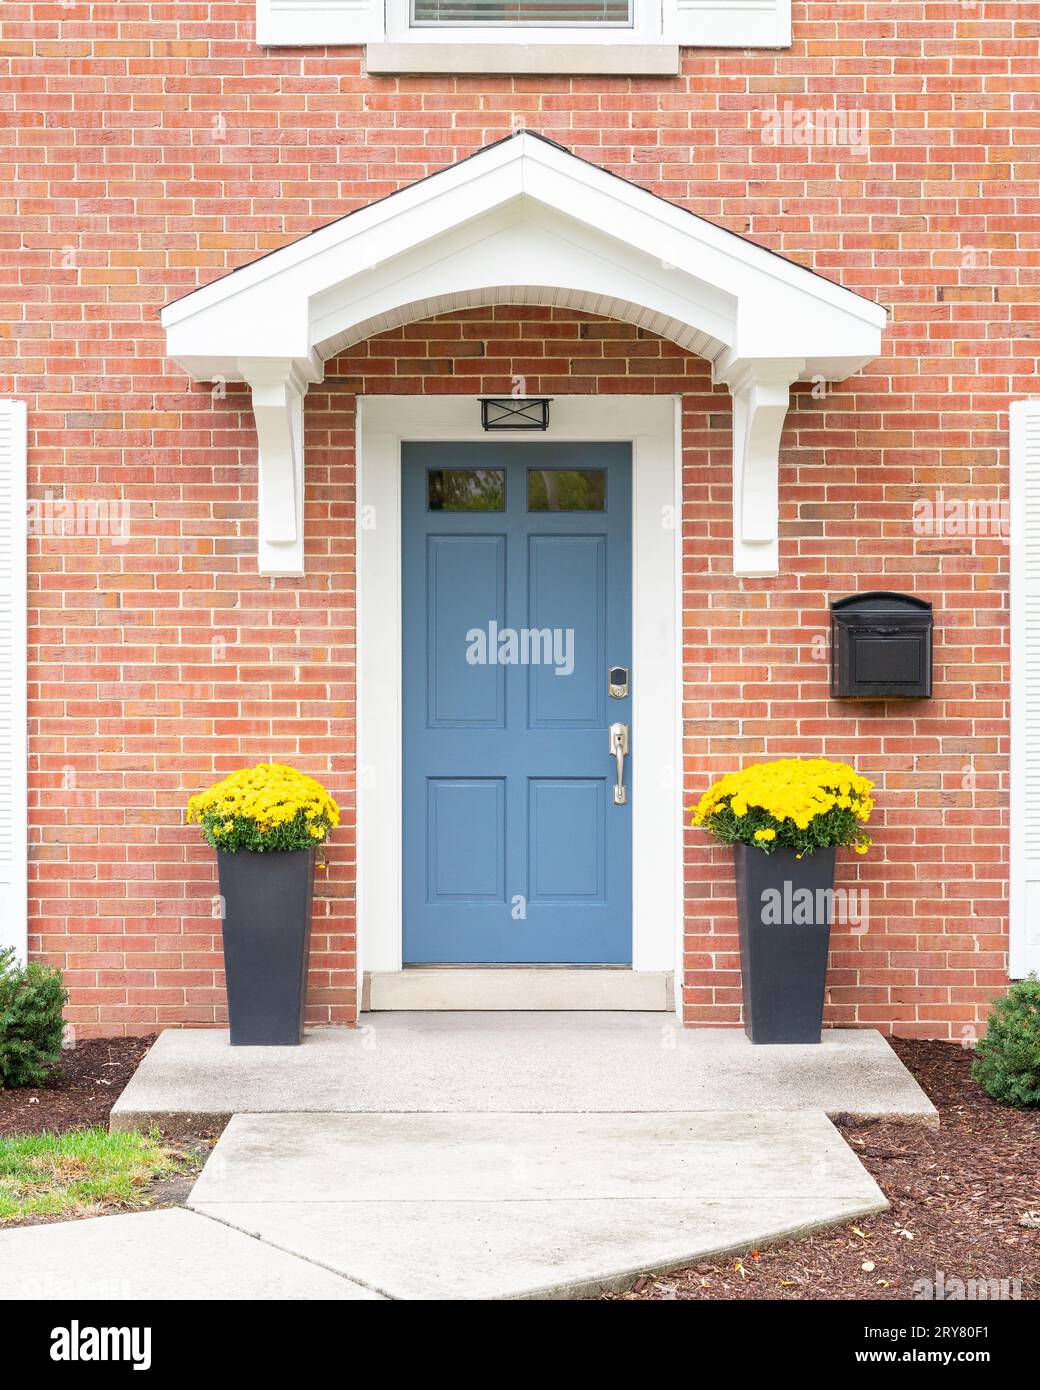 Una porta d'ingresso di una casa in mattoni rossi con uno sbalzo bianco, una porta d'ingresso blu e fioriere con fiori gialli. Foto Stock